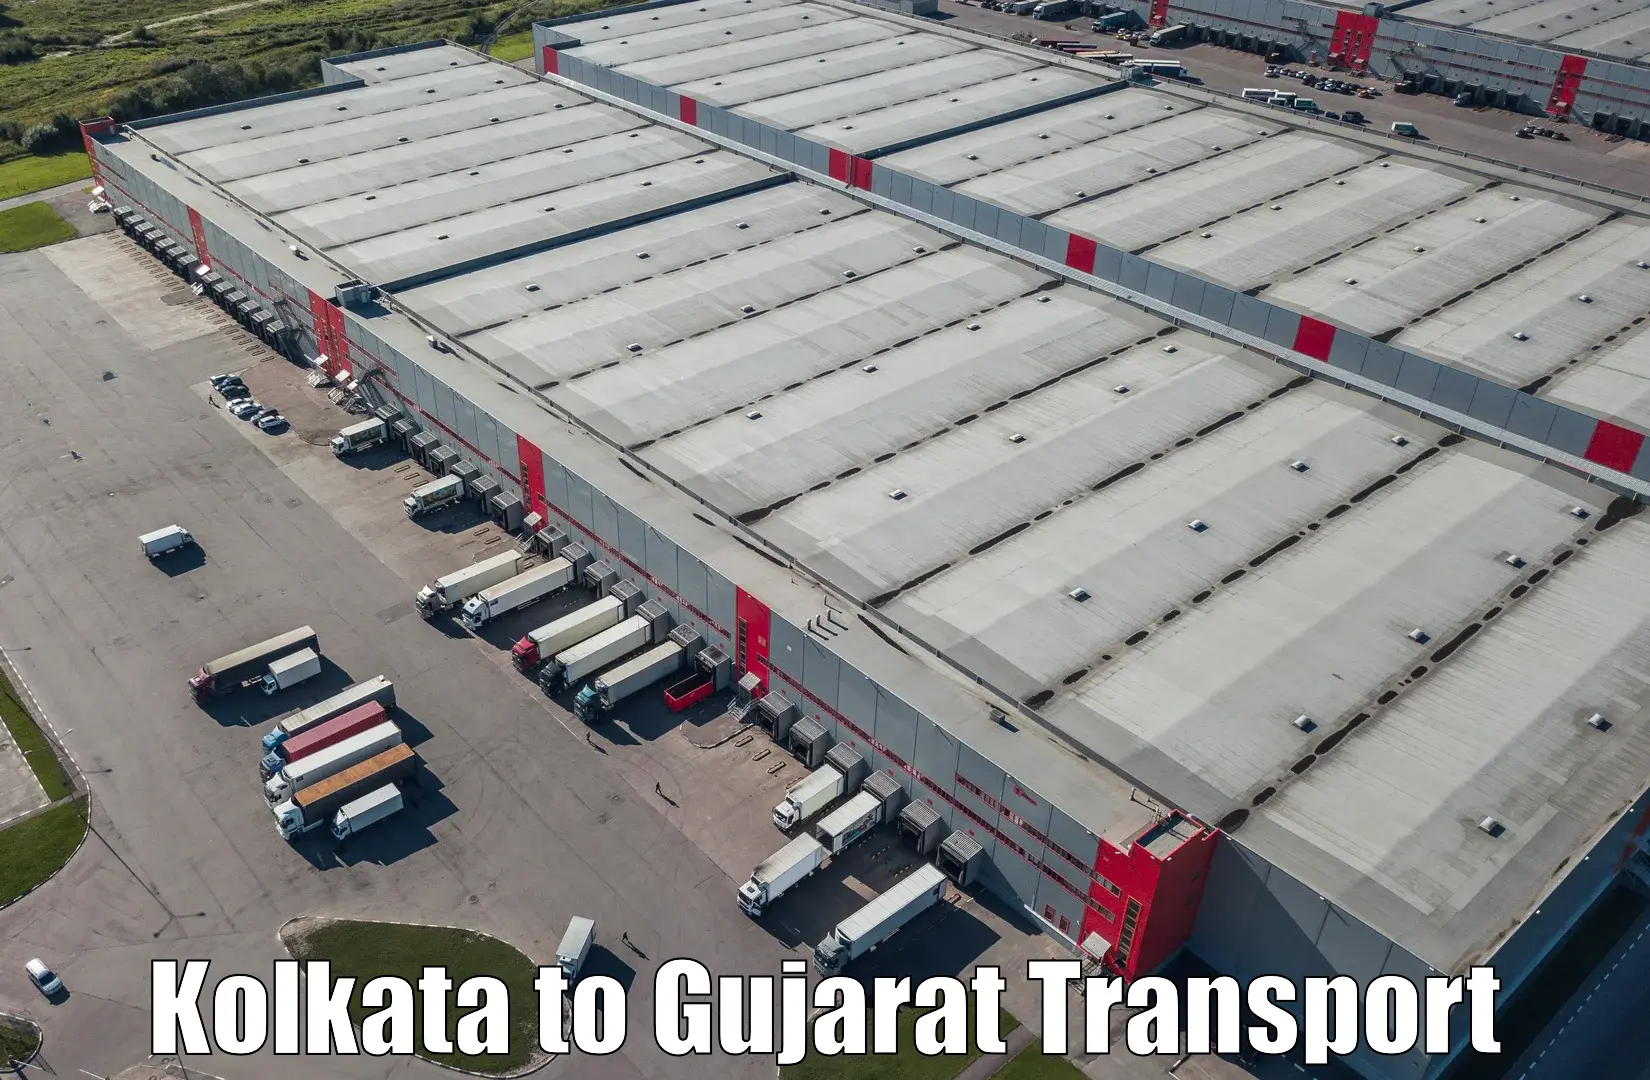 Furniture transport service Kolkata to Dharmasala